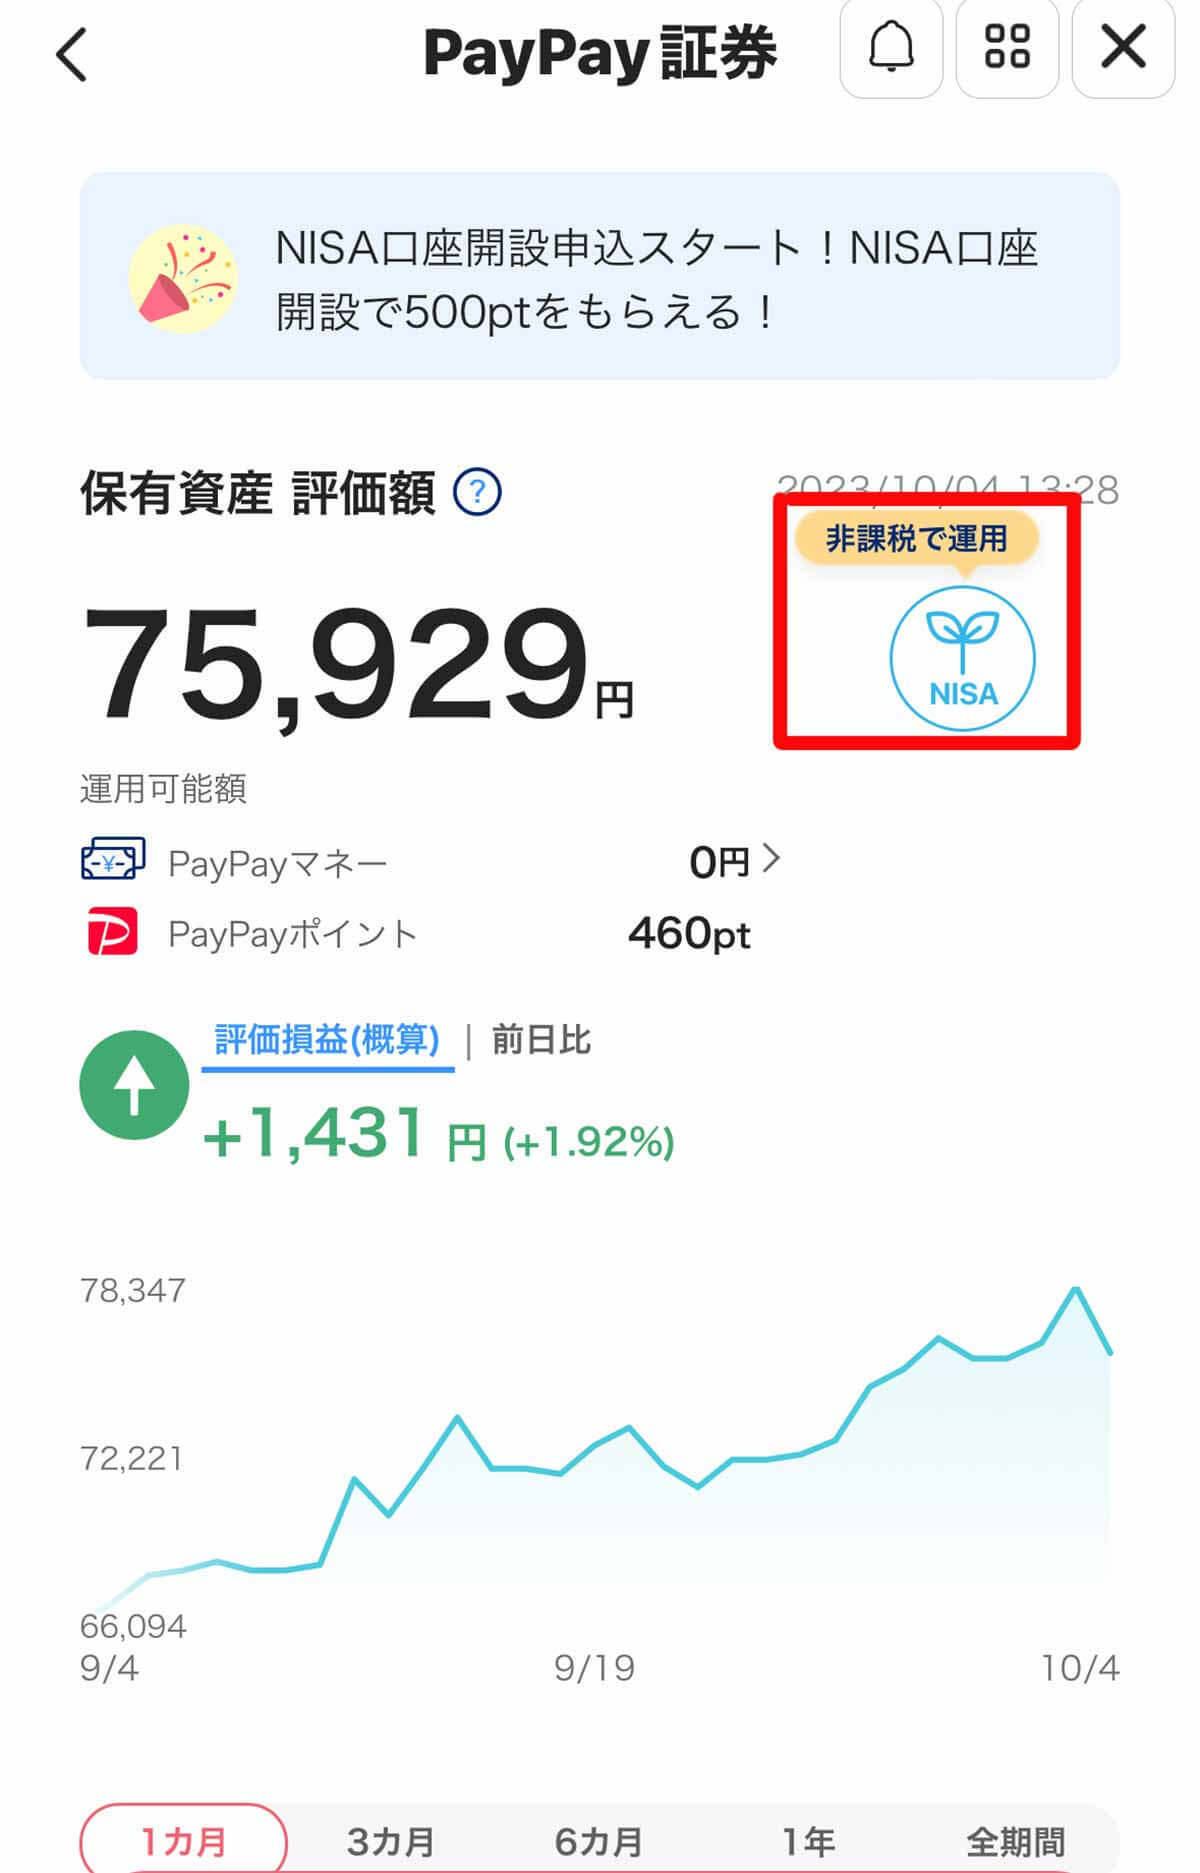 PayPay資産運用「100円からはじめられるNISA」が話題 – アプリから口座開設できるの?